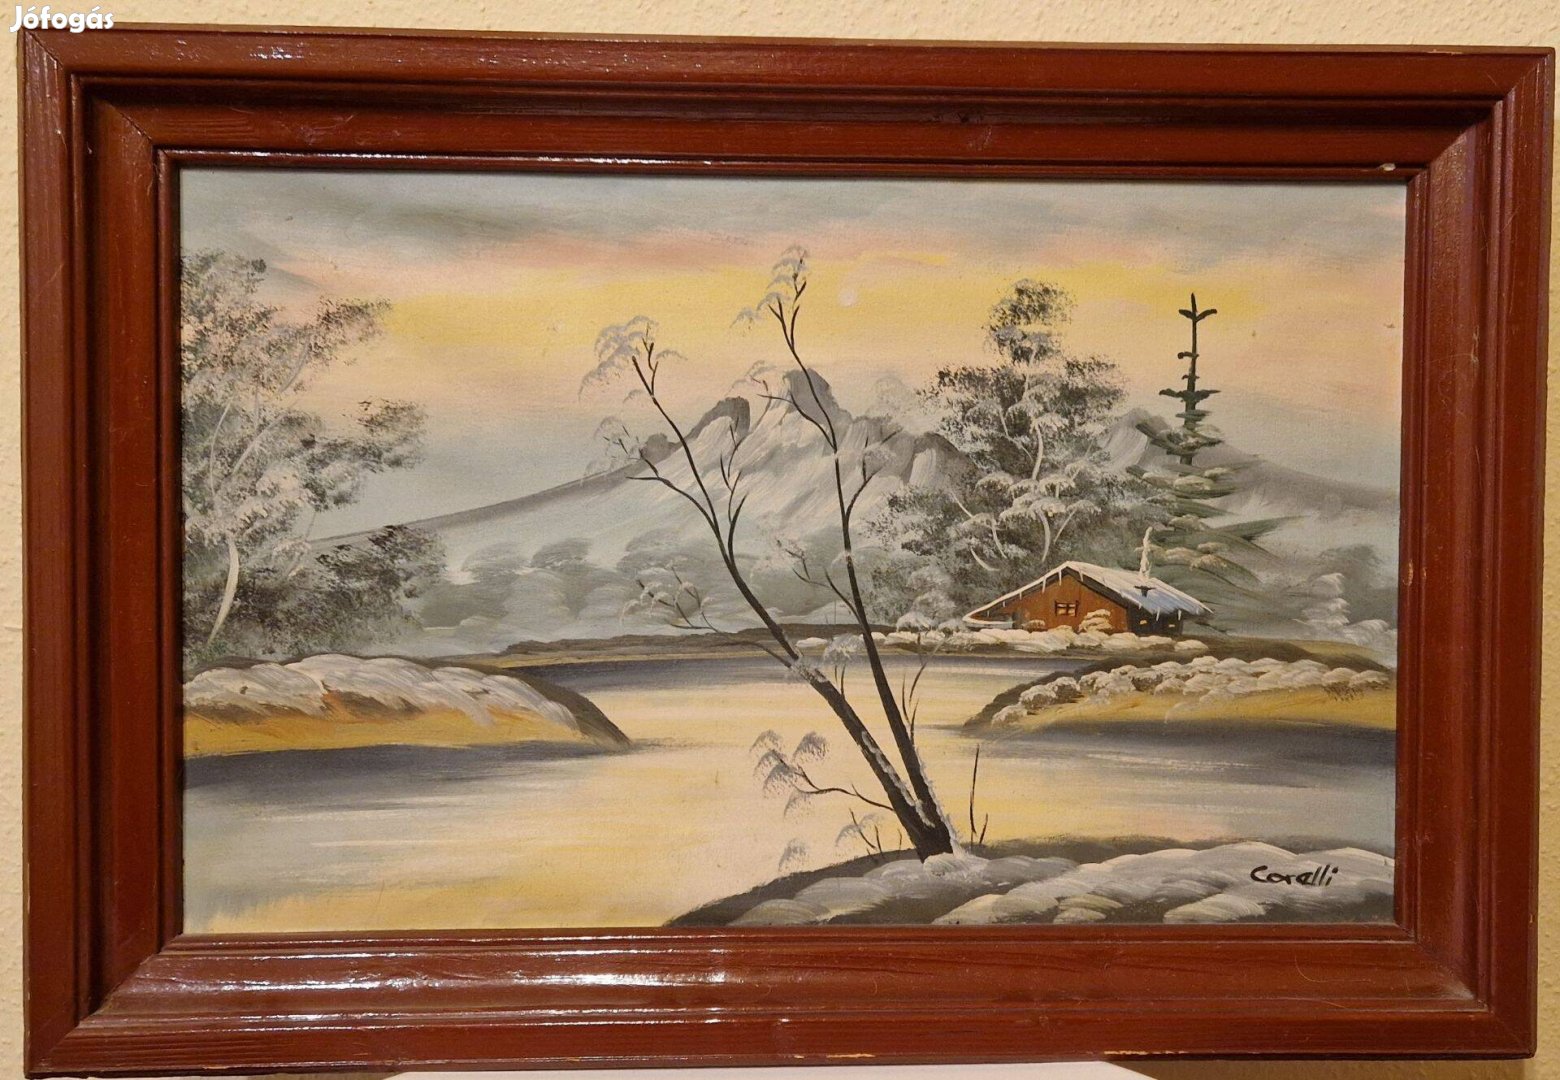 Corelli téli tájkép festmény 62x43 cm